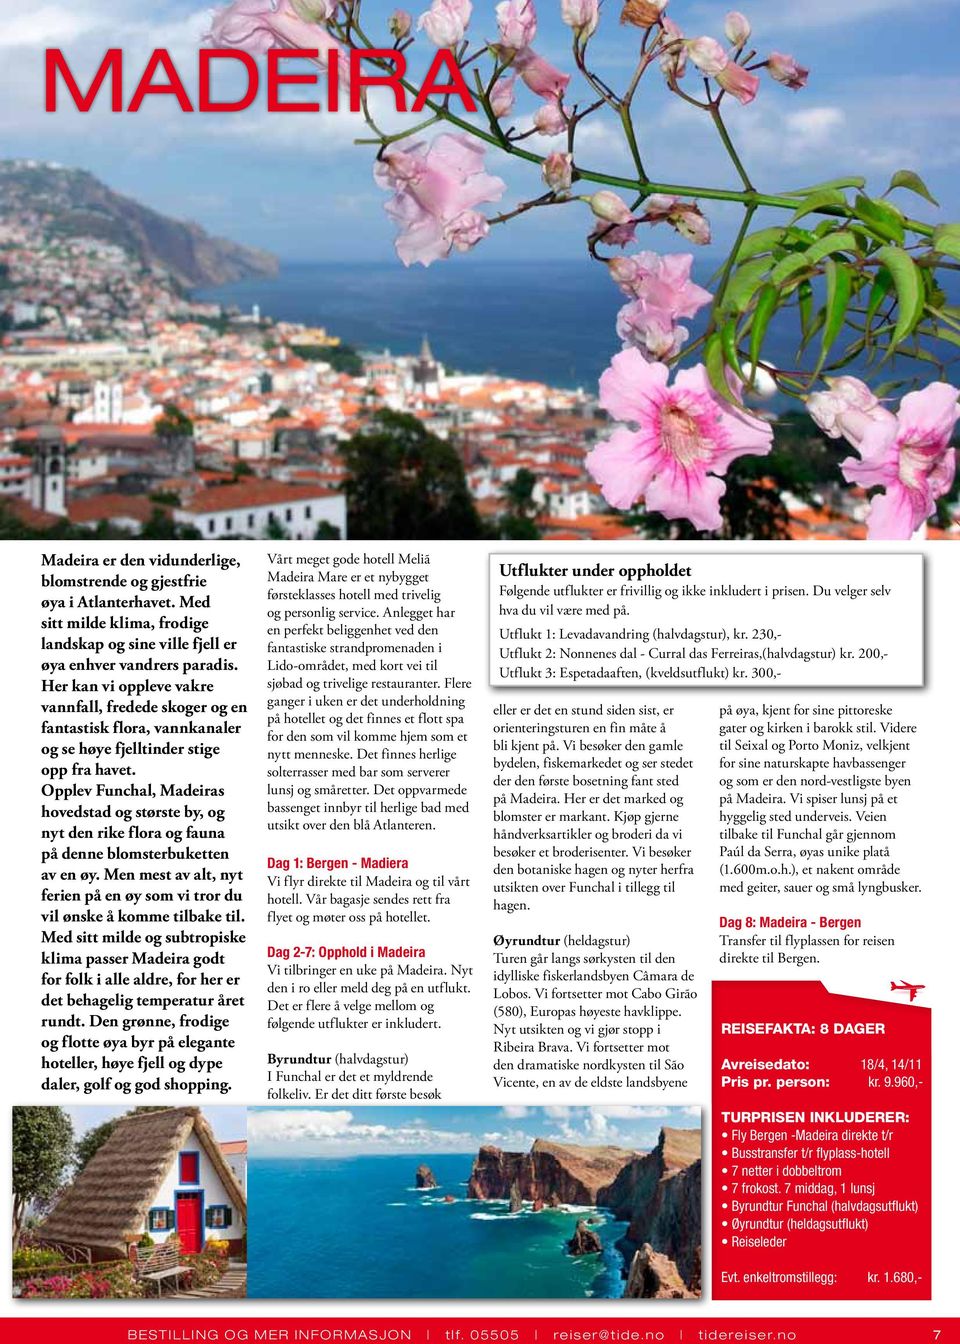 Opplev Funchal, Madeiras hovedstad og største by, og nyt den rike flora og fauna på denne blomsterbuketten av en øy. Men mest av alt, nyt ferien på en øy som vi tror du vil ønske å komme tilbake til.